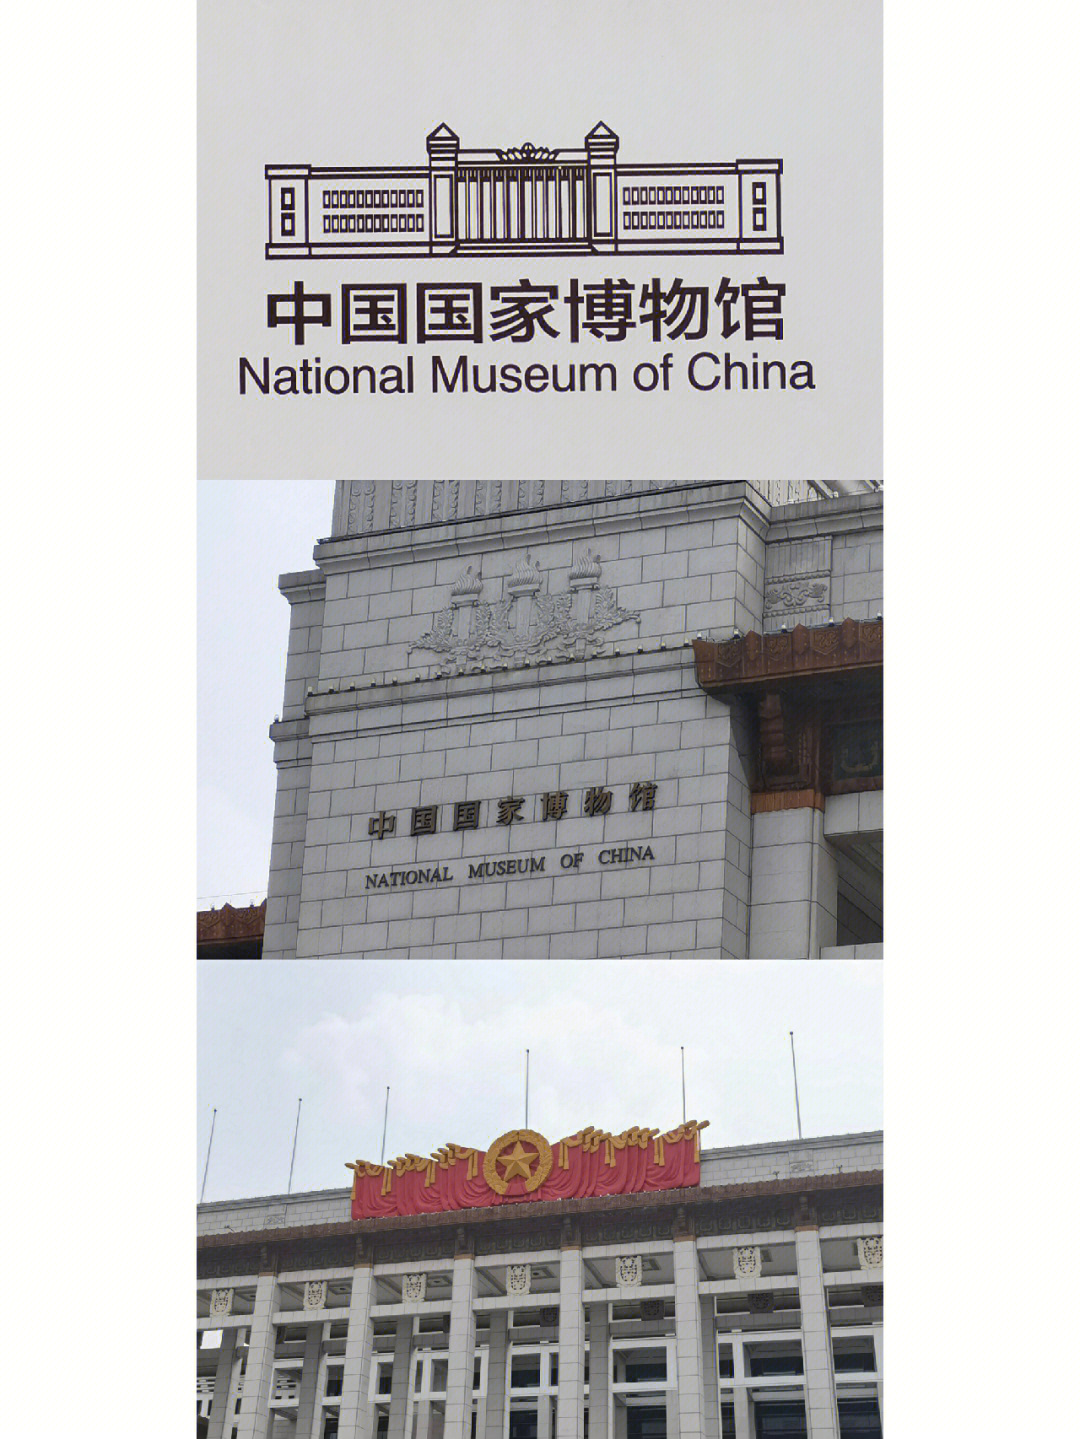 中国国家博物馆logo图片